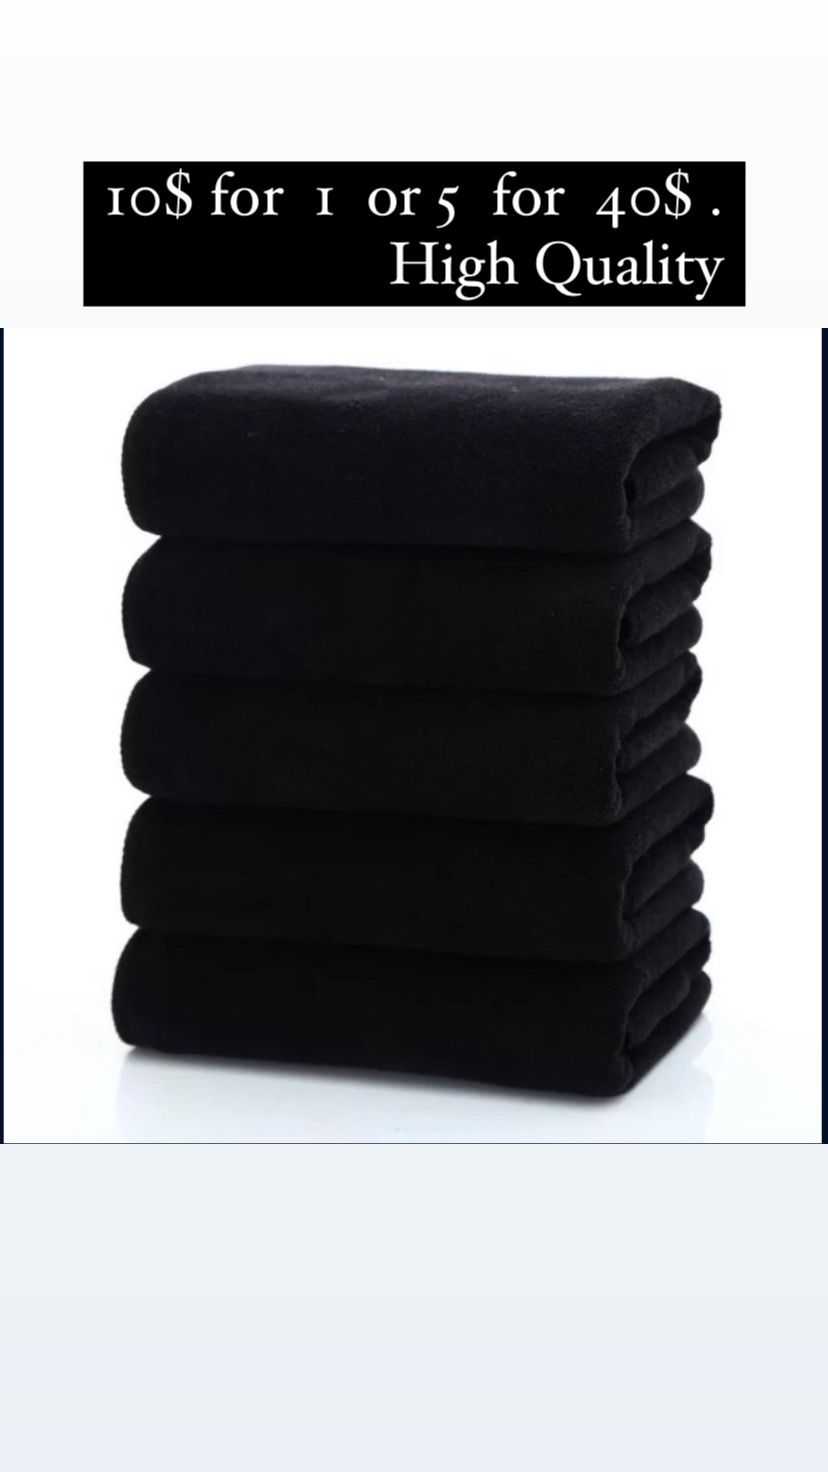 Gym Microfiber Towels - Organic Material